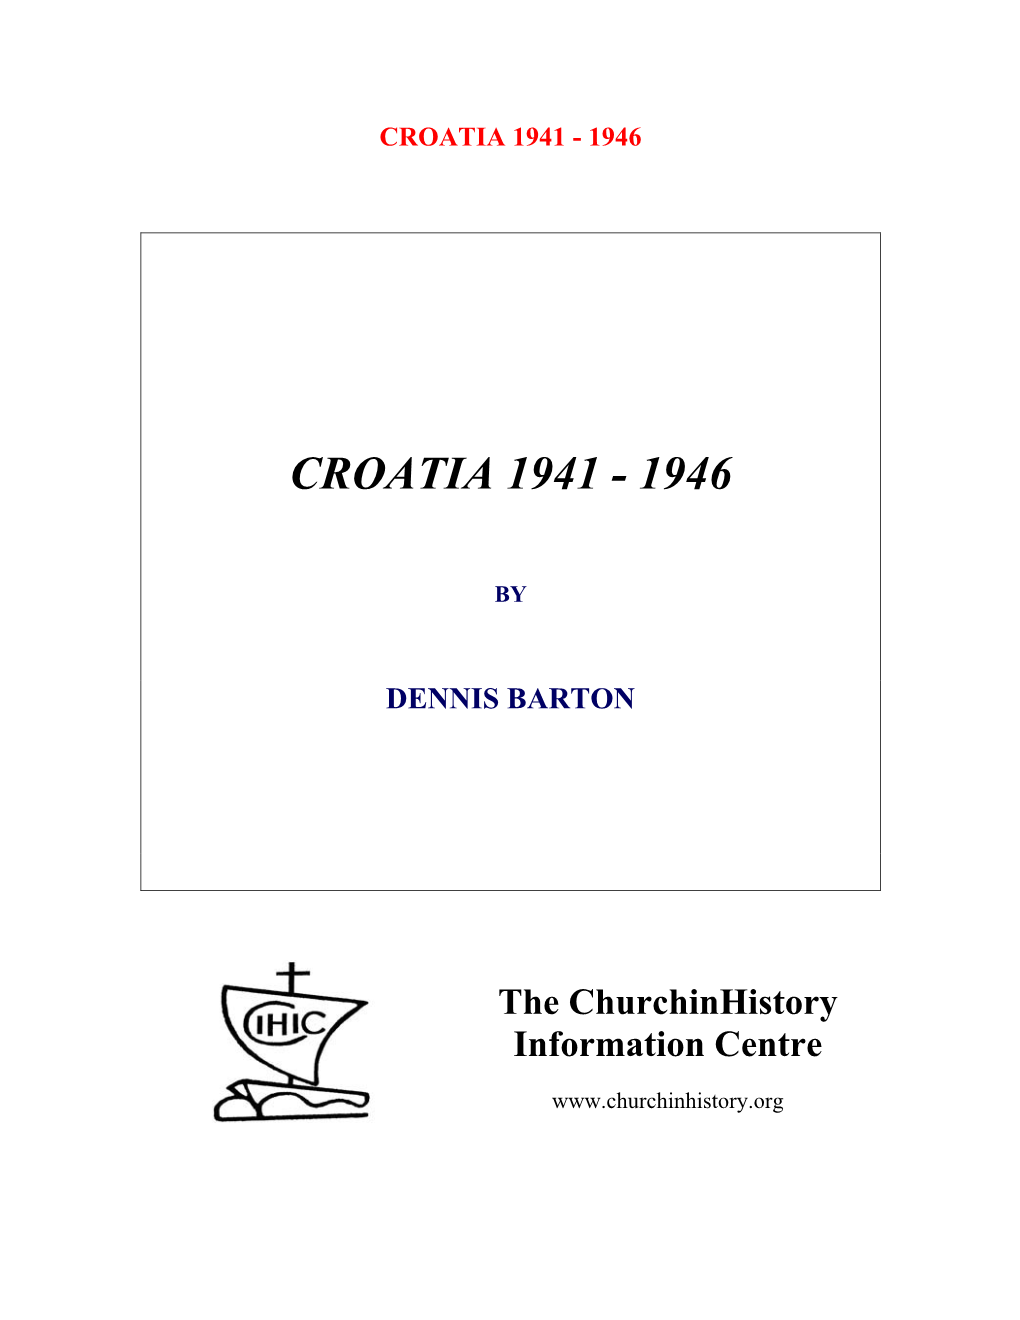 Croatia 1941-1946 (Pdf)